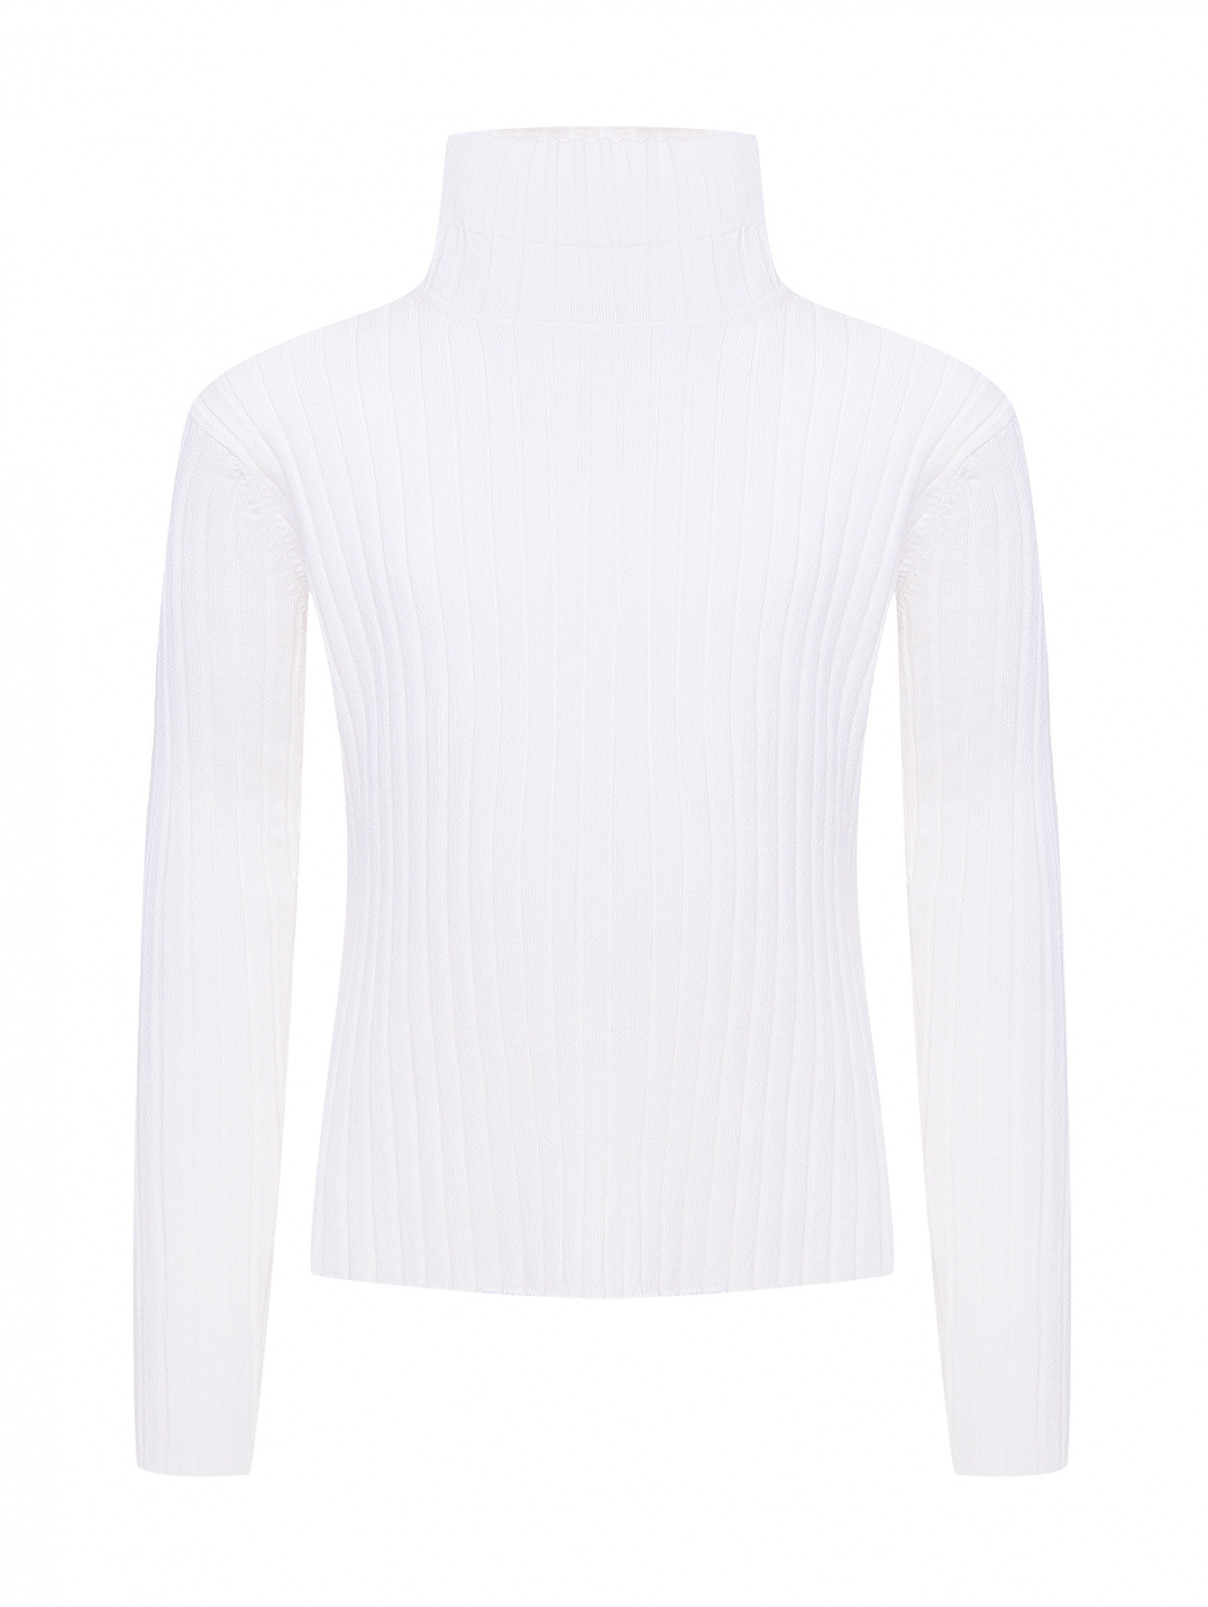 Однотонная водолазка в рубчик Aletta Couture  –  Общий вид  – Цвет:  Белый